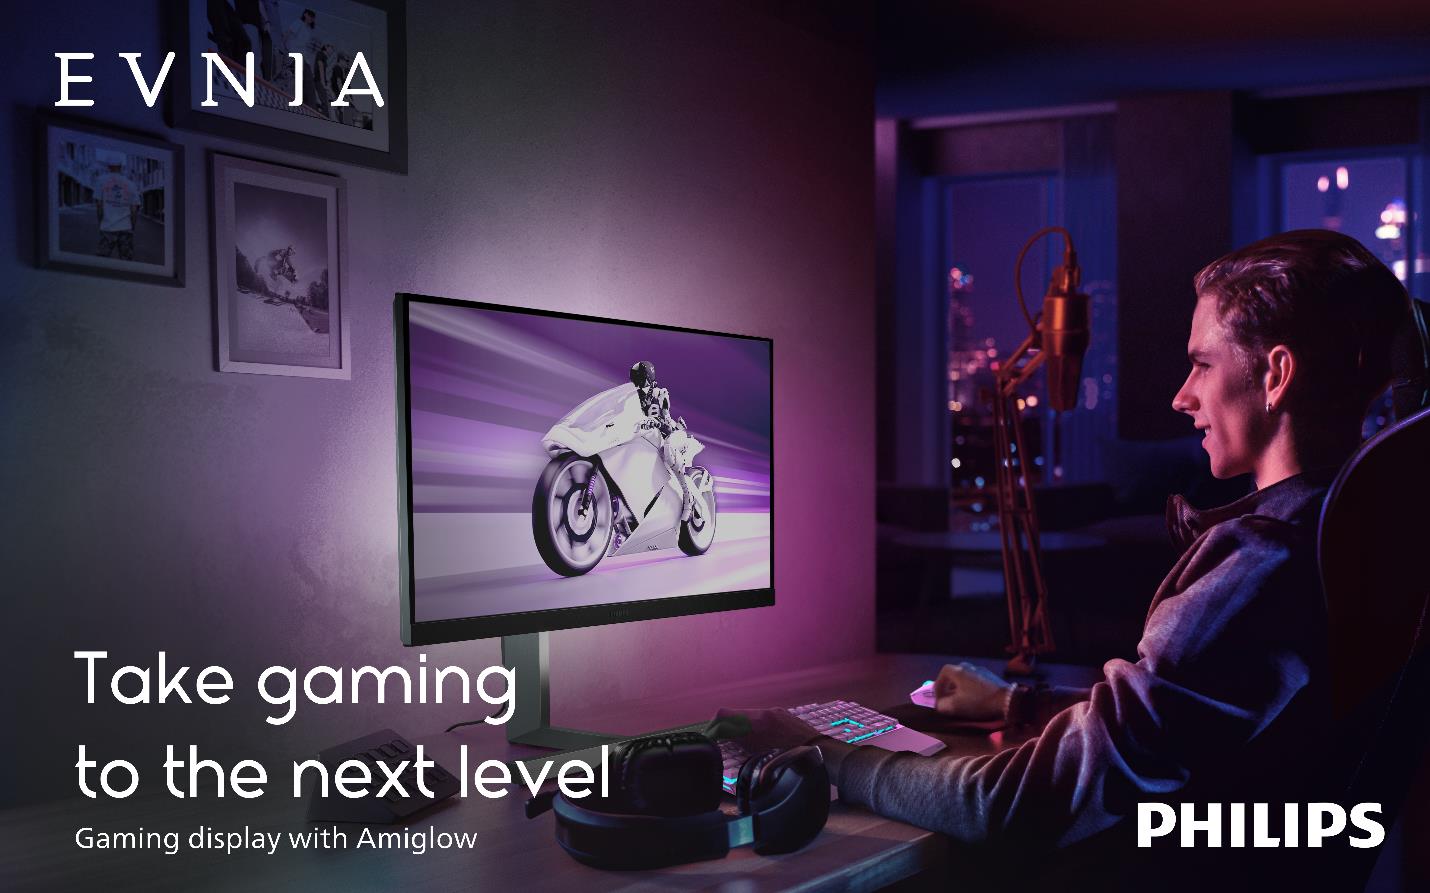  Philips Evnia Gaming Monitors đồng hành cùng bộ phim của Universal Pictures, Fast-X - Ảnh 1.